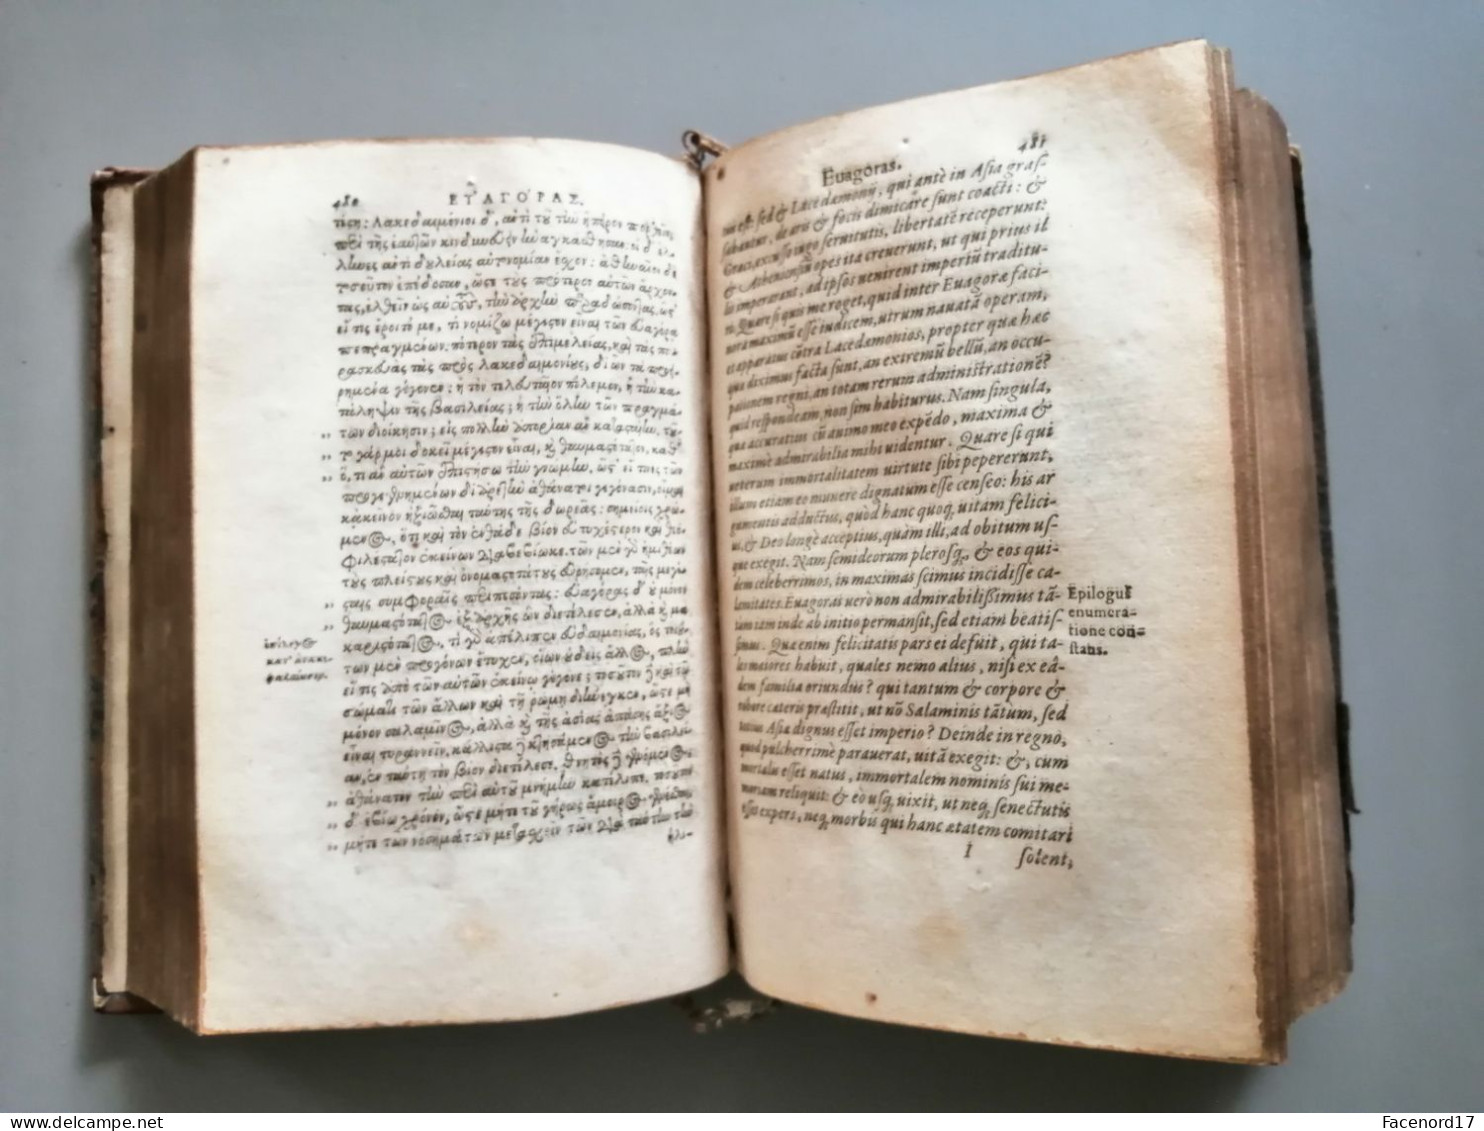 Isocratis Scripta quae quidem nunc extant, omnia, Graecolatina, postremo recognita Basile ae, ex officina Oporiniana1587